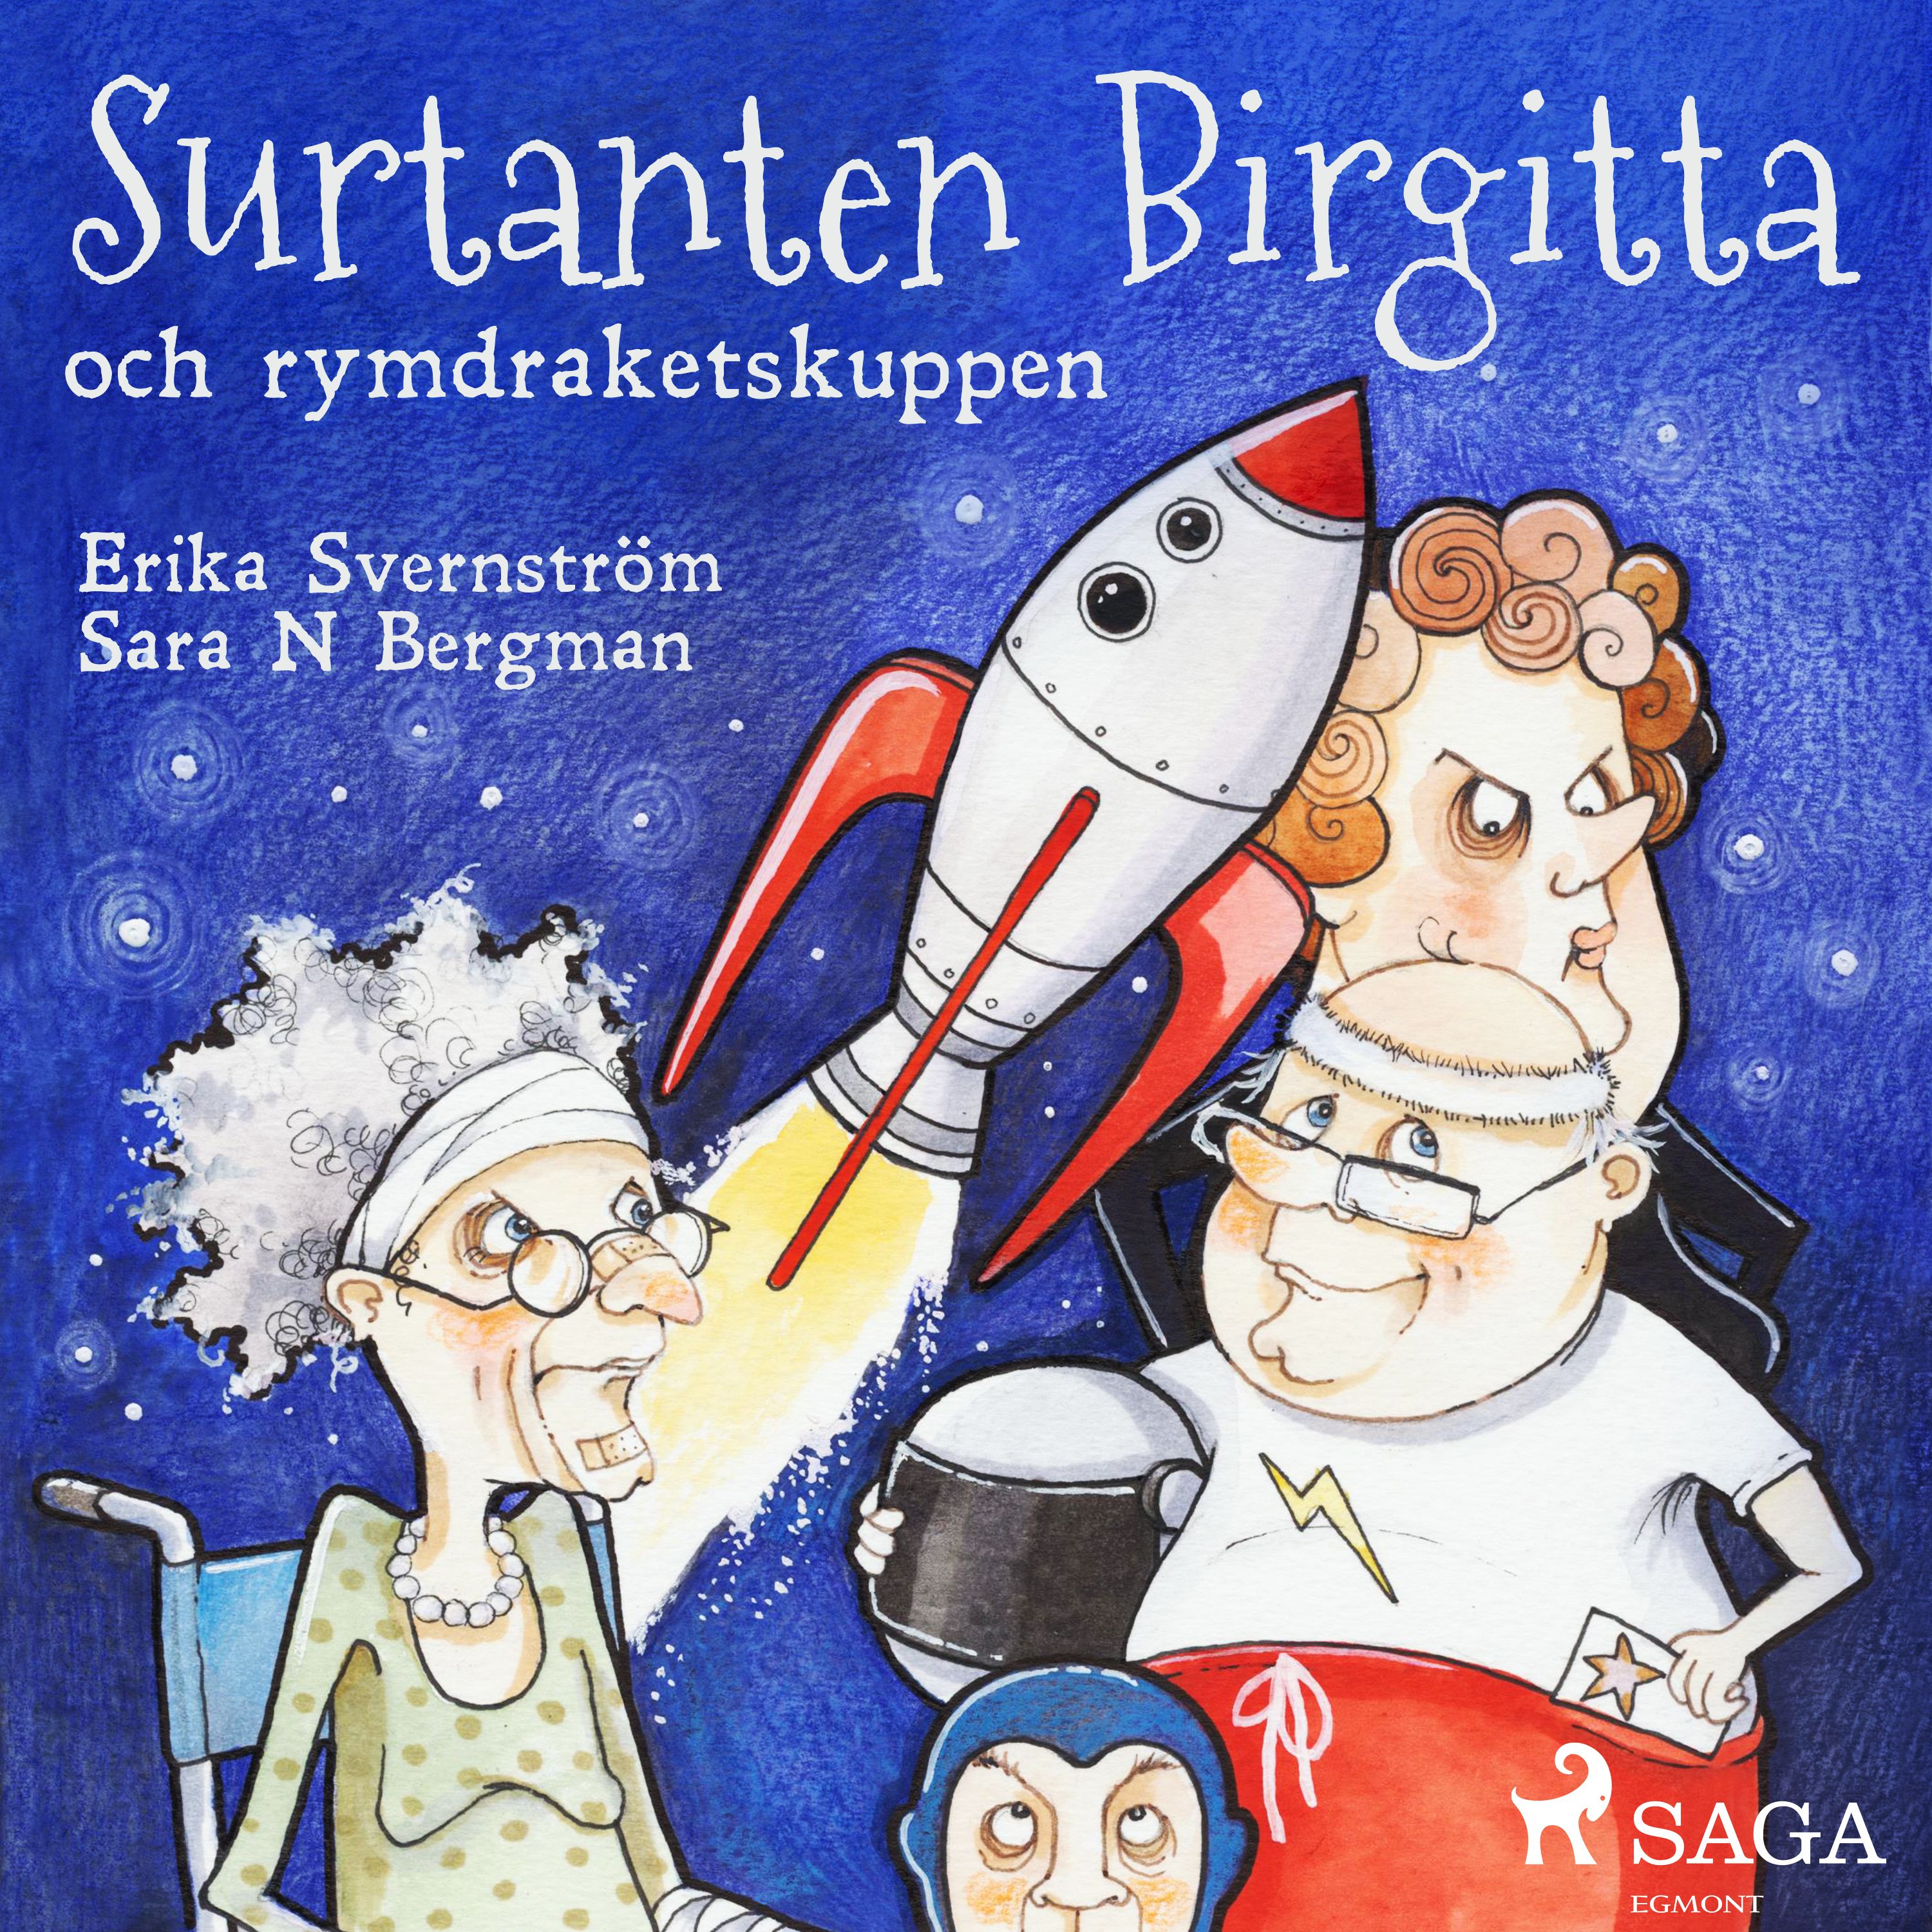 Surtanten Birgitta och rymdraketskuppen, ljudbok av Erika Svernström